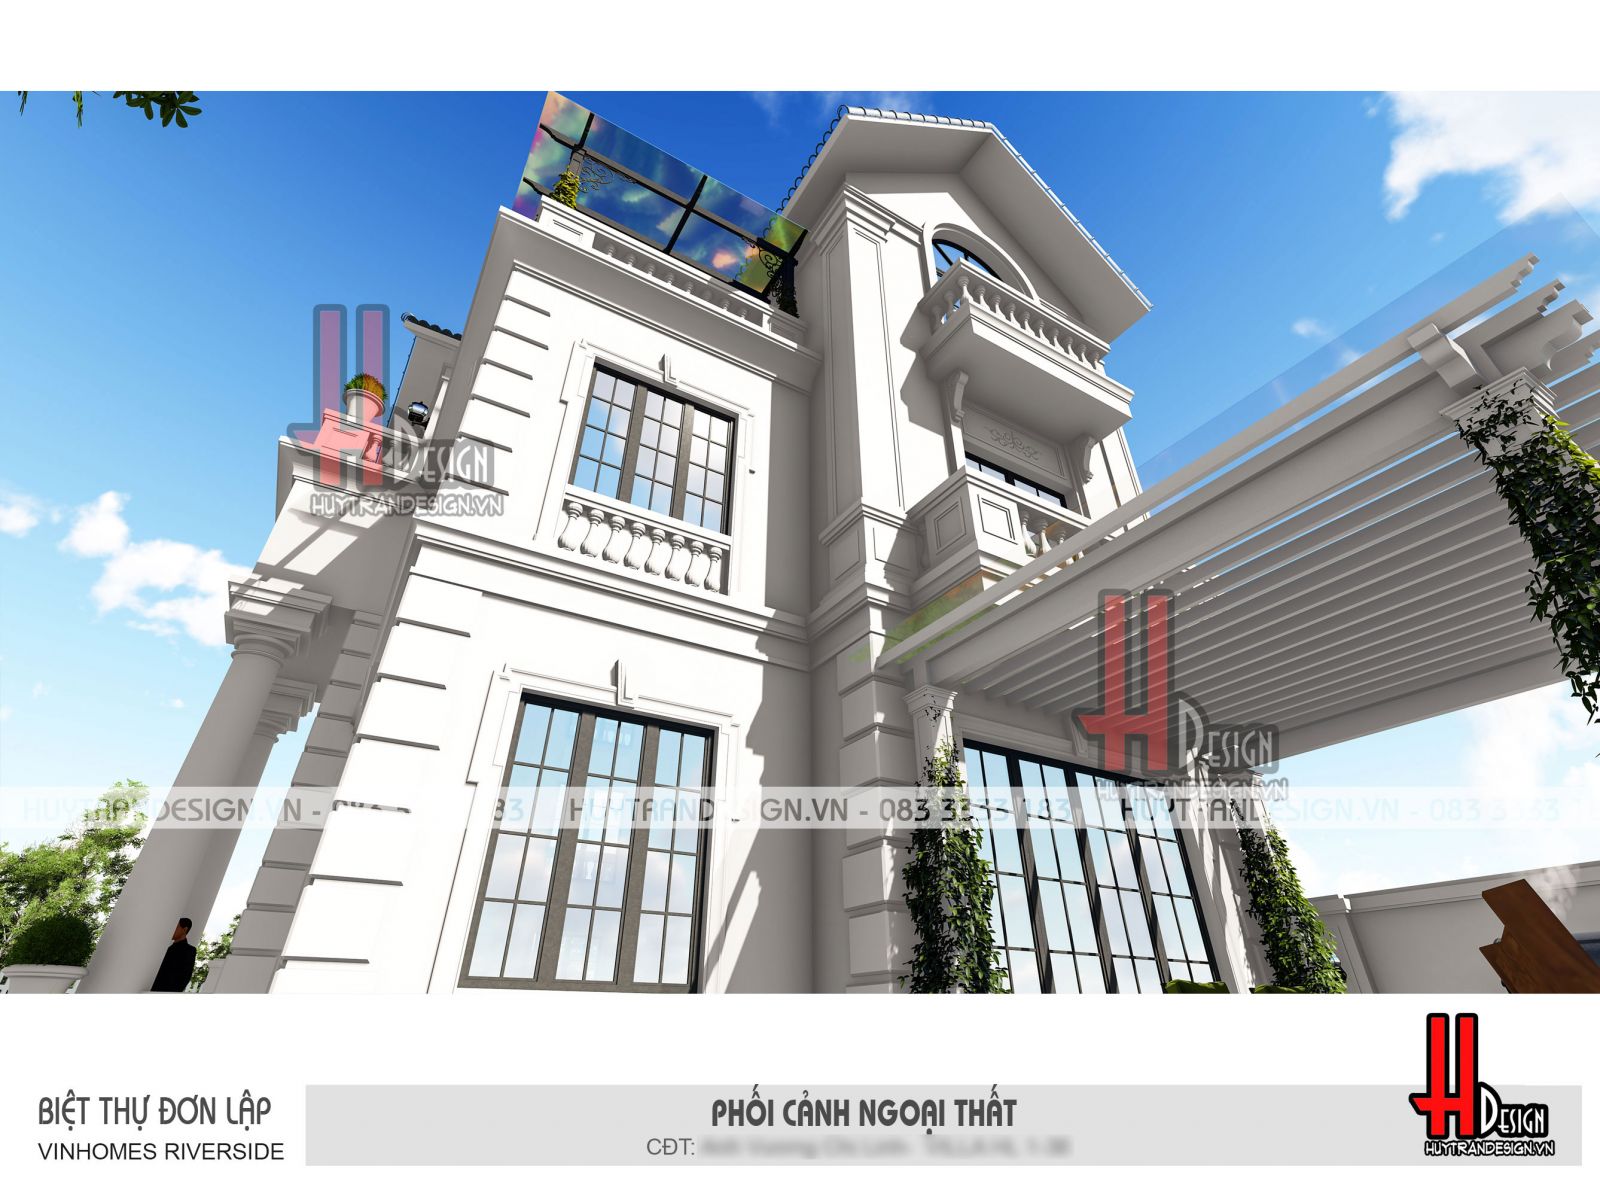 Mẫu thiết kế nhà 3 tầng đẹp - Huytrandesign tư vấn, thiết kế, thi công, sửa chữa nhà đẹp tại Long Biên, Hà Nội - v9